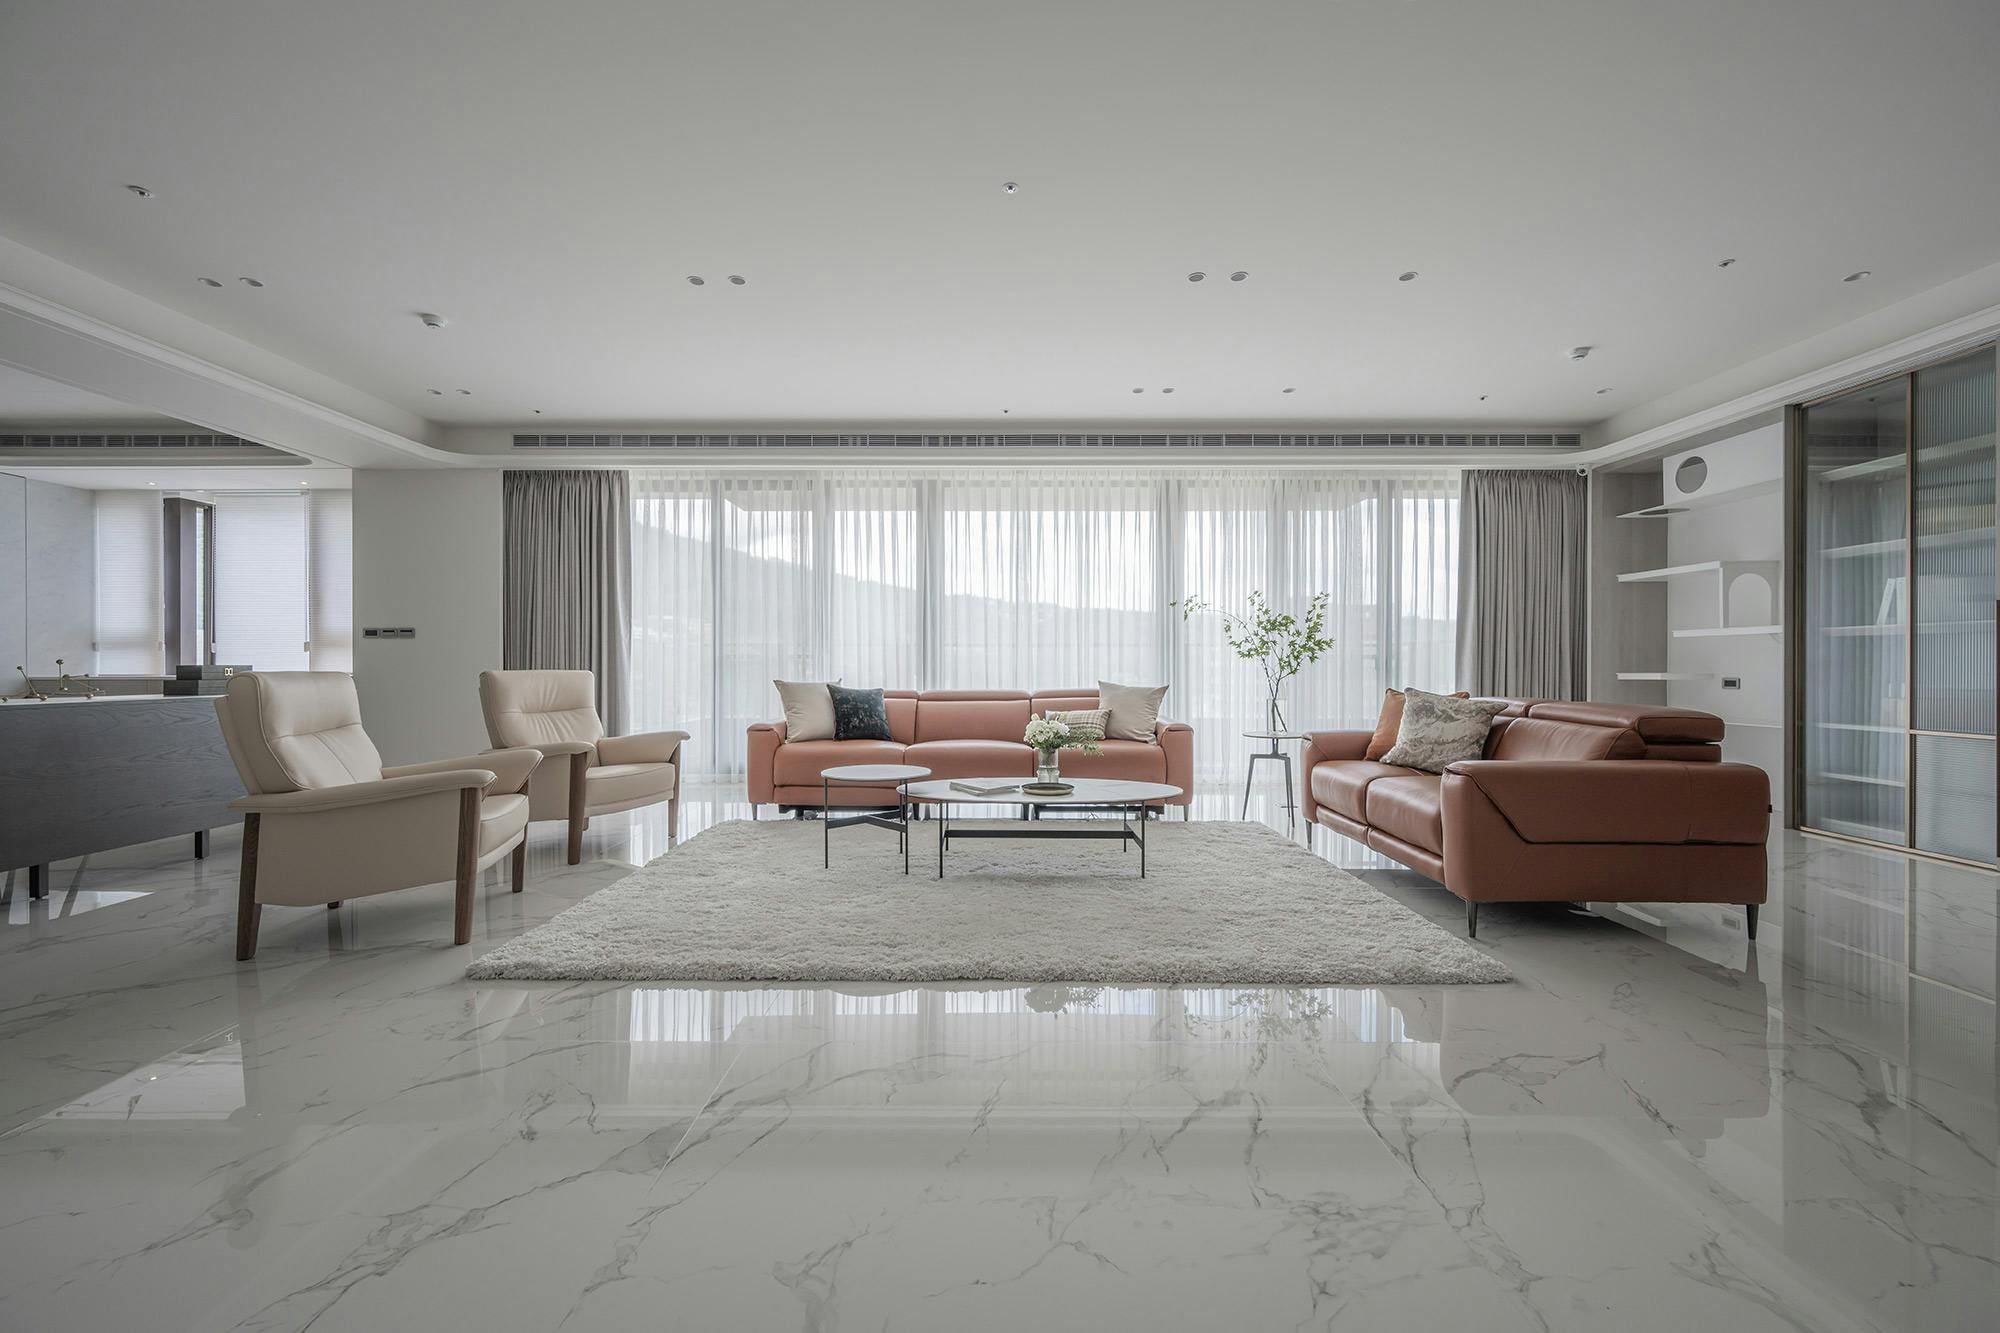 Bildnummer 47 des aktuellen Abschnitts von High-end homes with a modern design and durable materials von Cosentino Deutschland